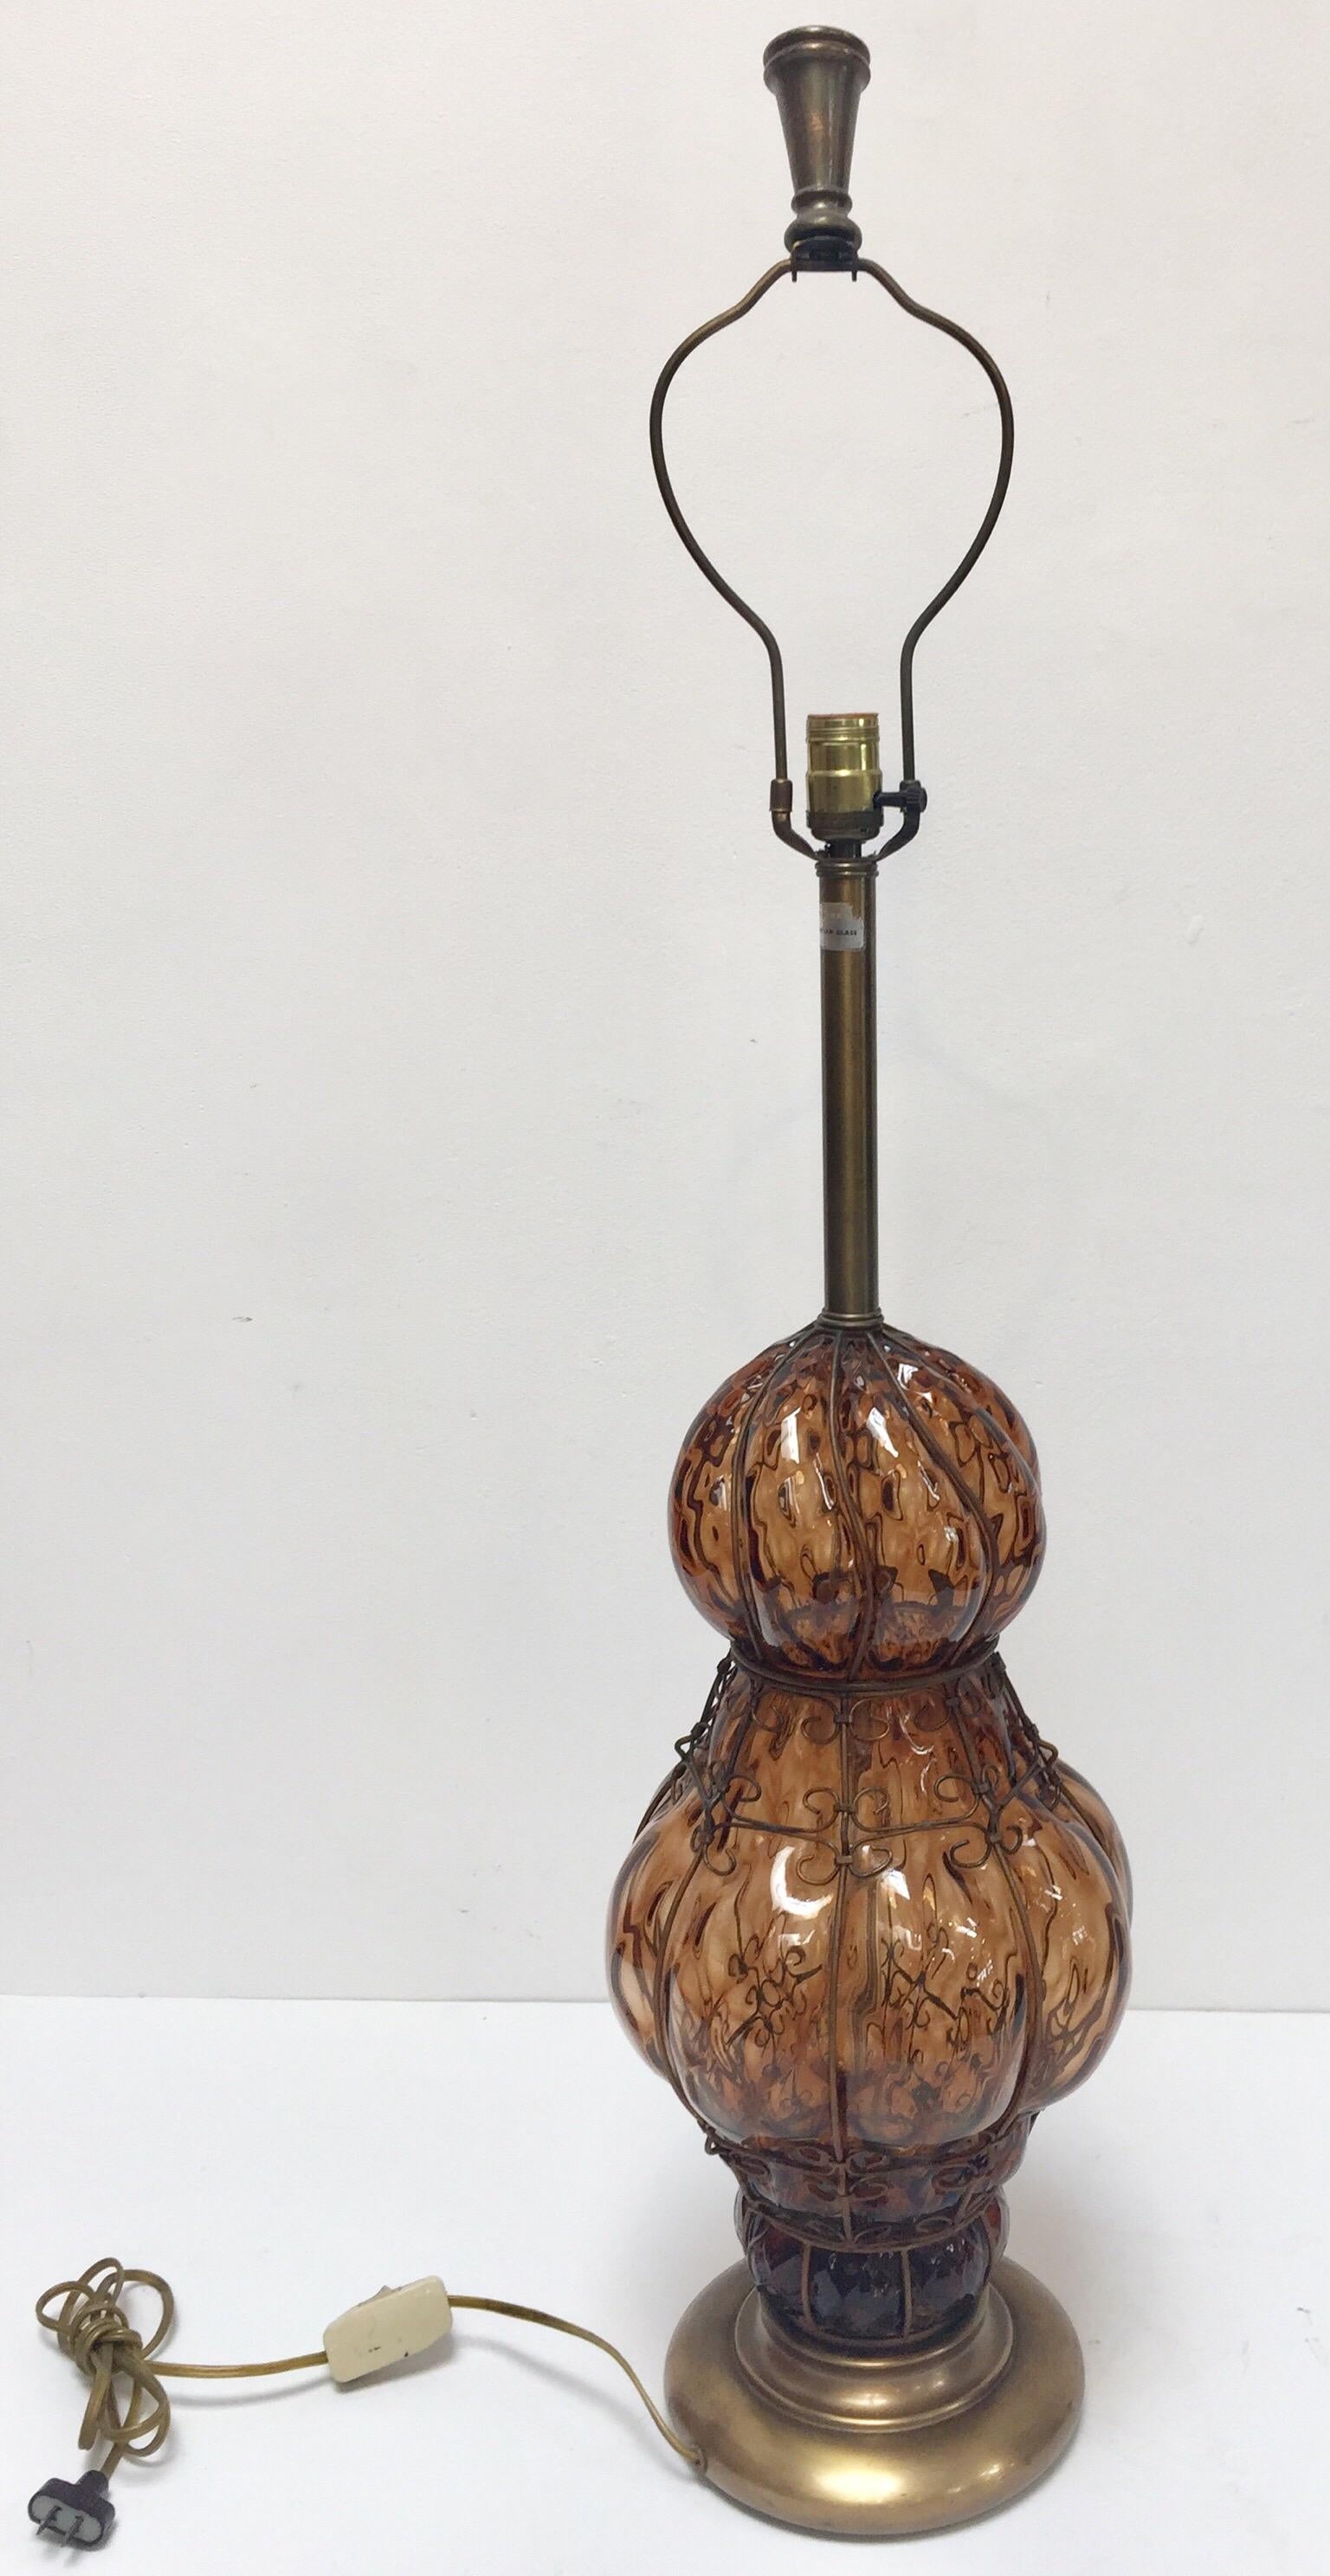 Lampe de table en verre ambré vénitien à bulles d'air de Murano, d'origine Marbro, datant du milieu du siècle dernier.
Verre soufflé à la main de style vénitien avec design de cage câblée en métal.
Mesures : Base de 9